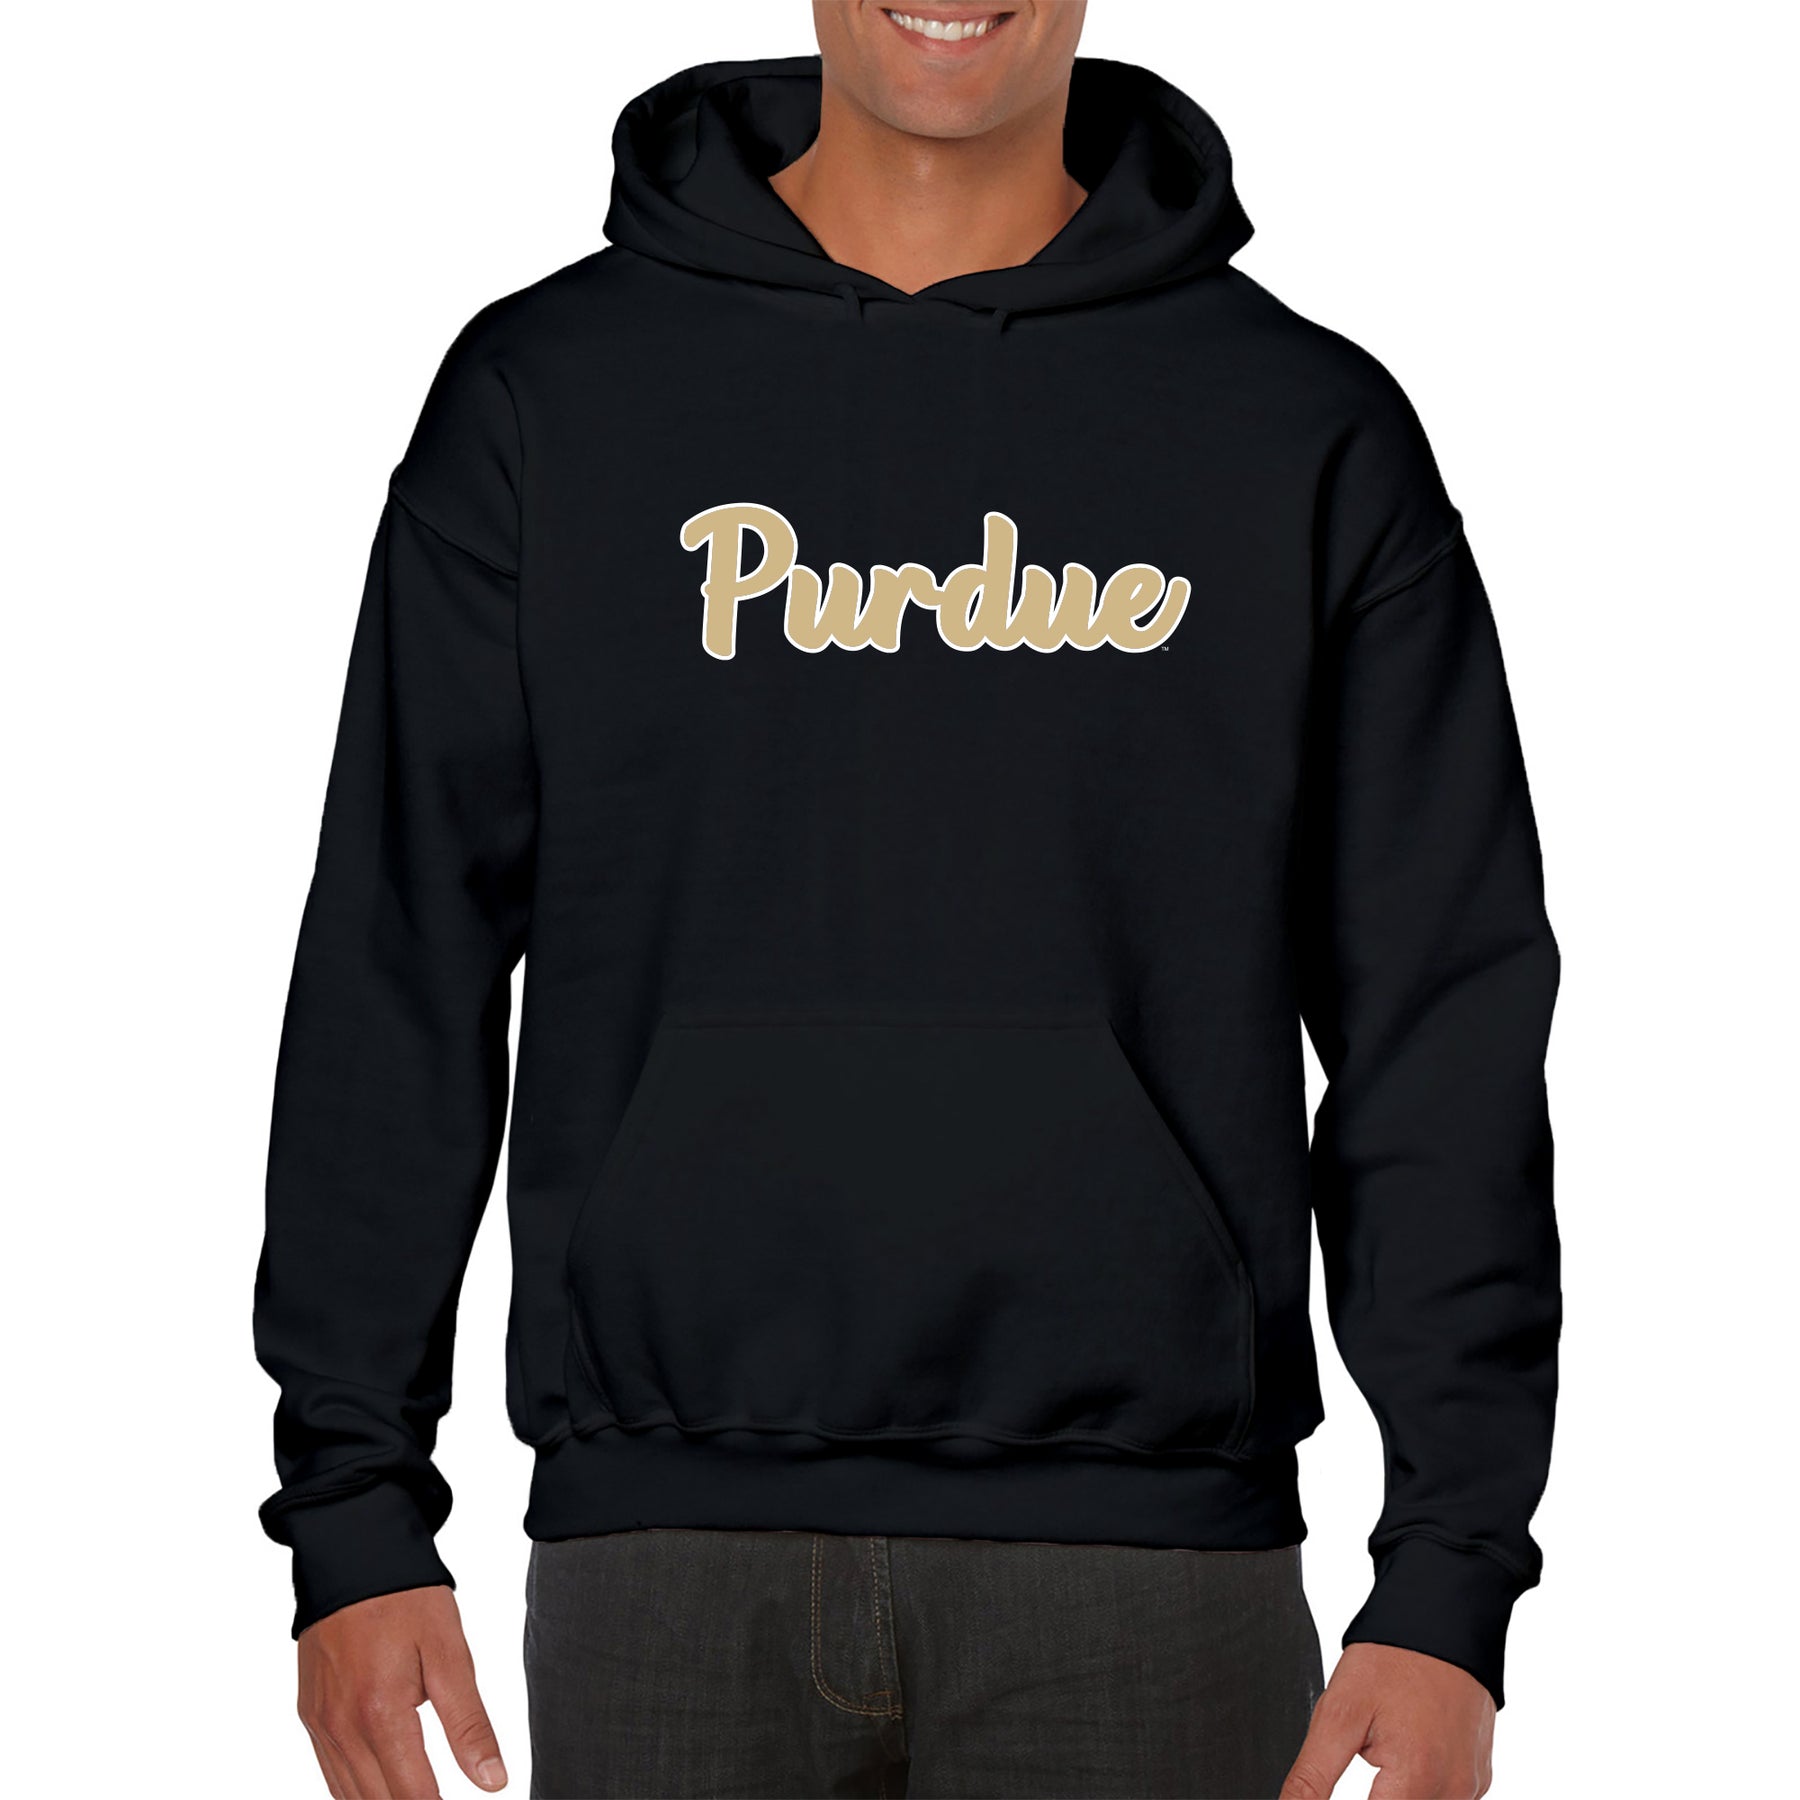 purdue football hoodie